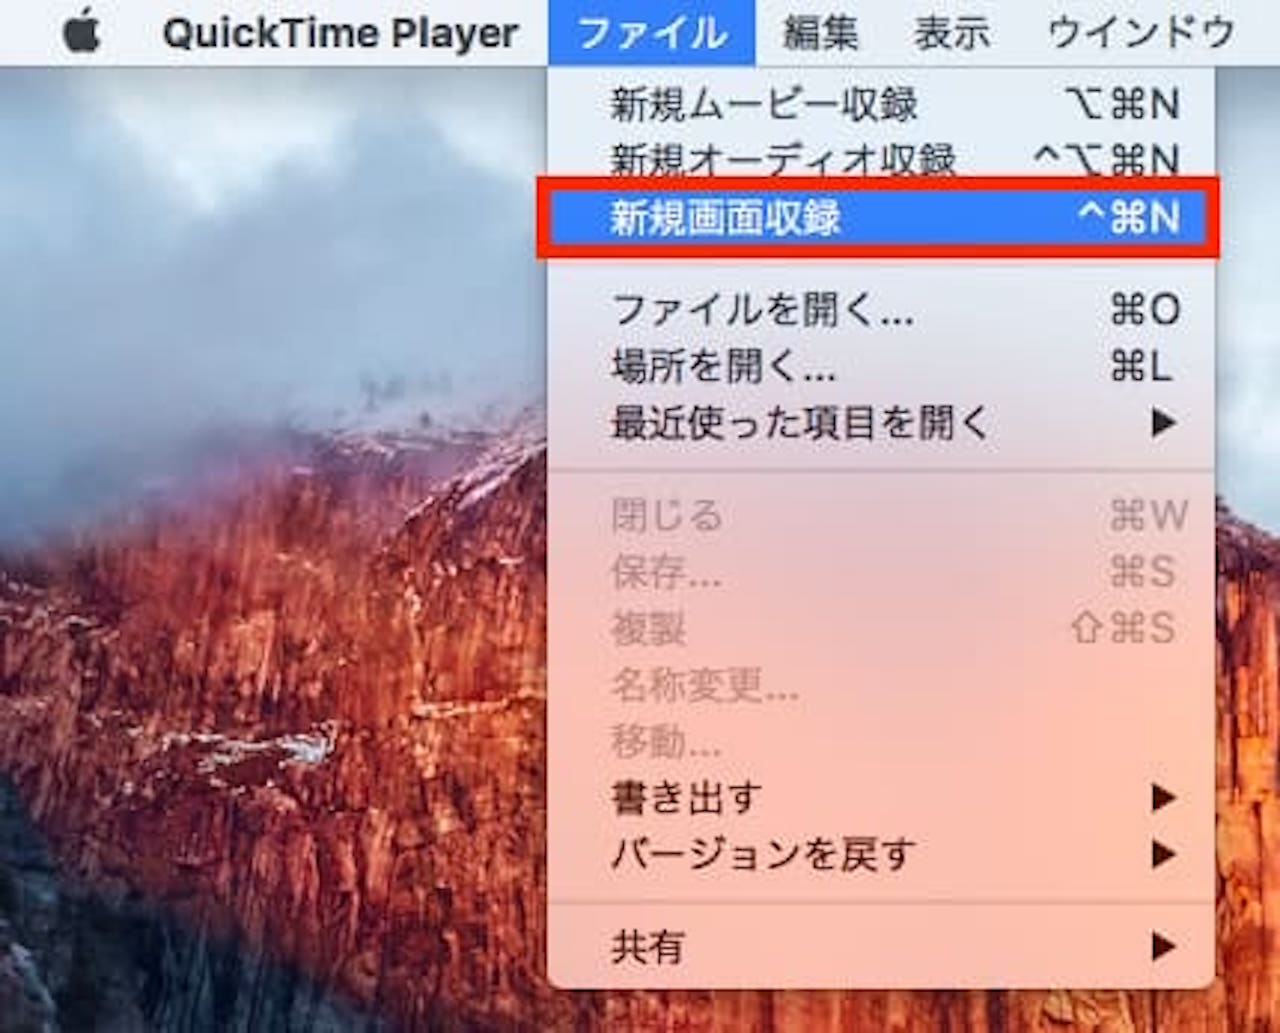 QuickTimePlayerを使って画面録画する方法⑥